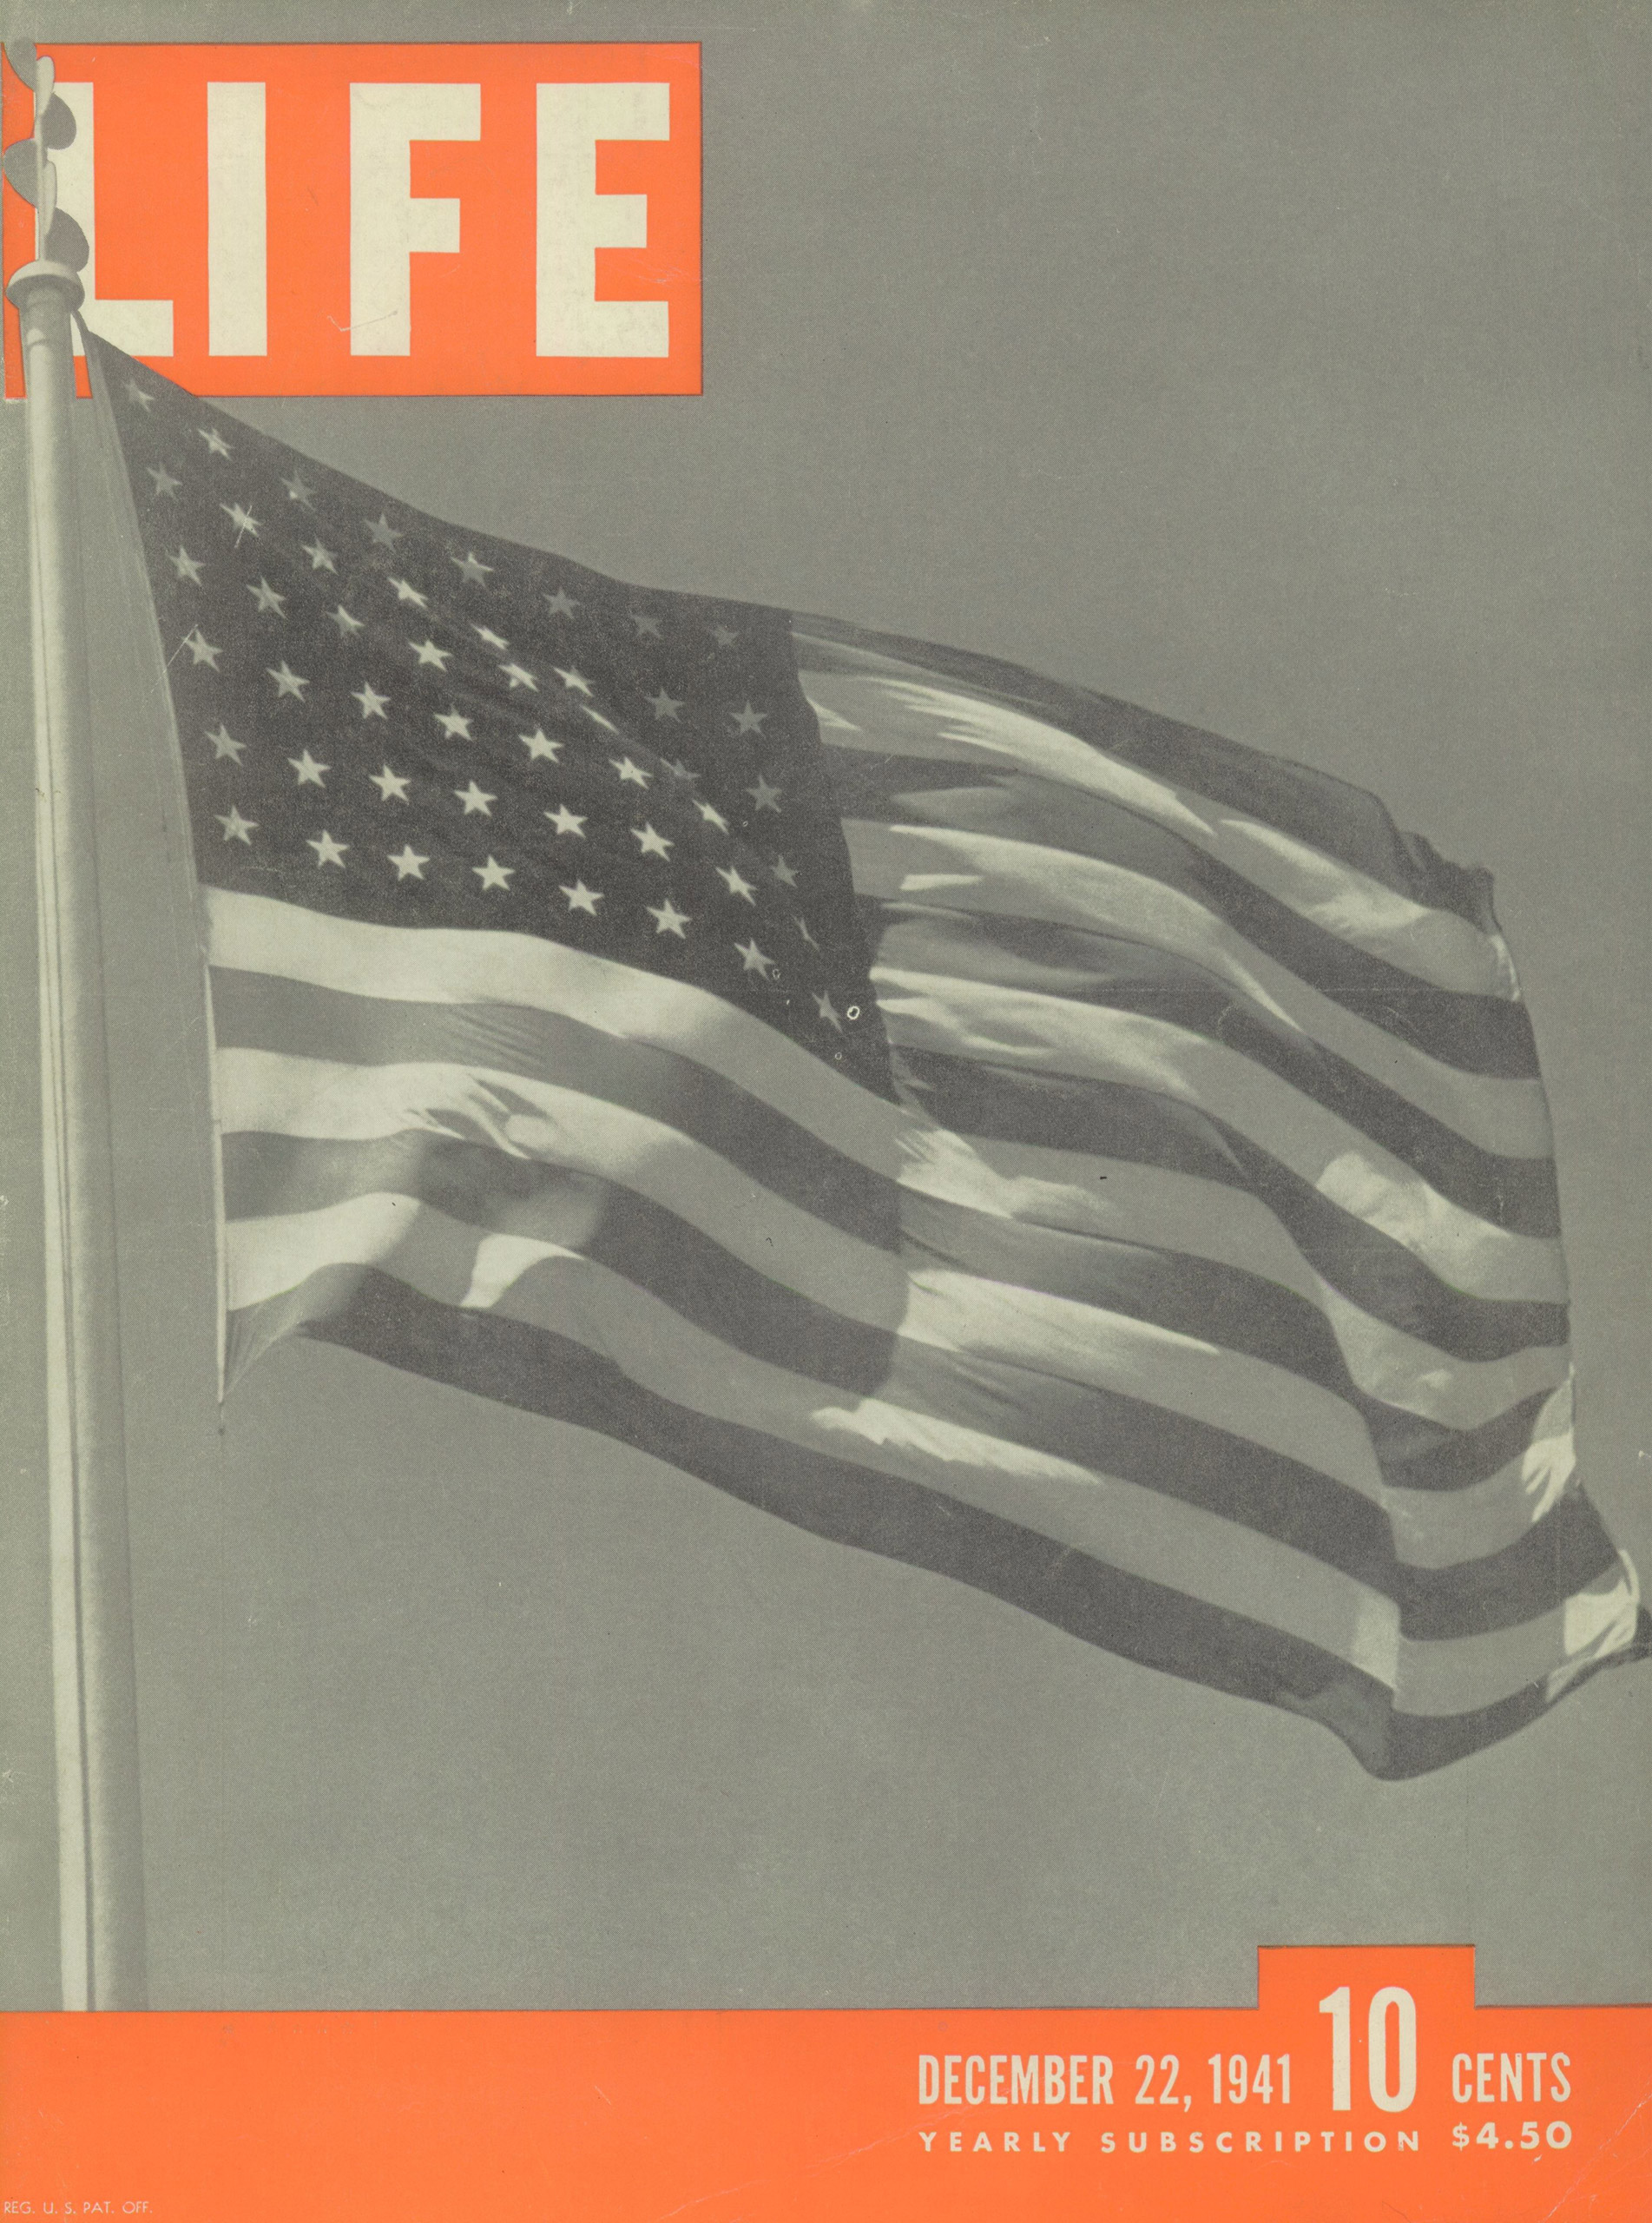 Dec. 22, 1941 cover of LIFE magazine.